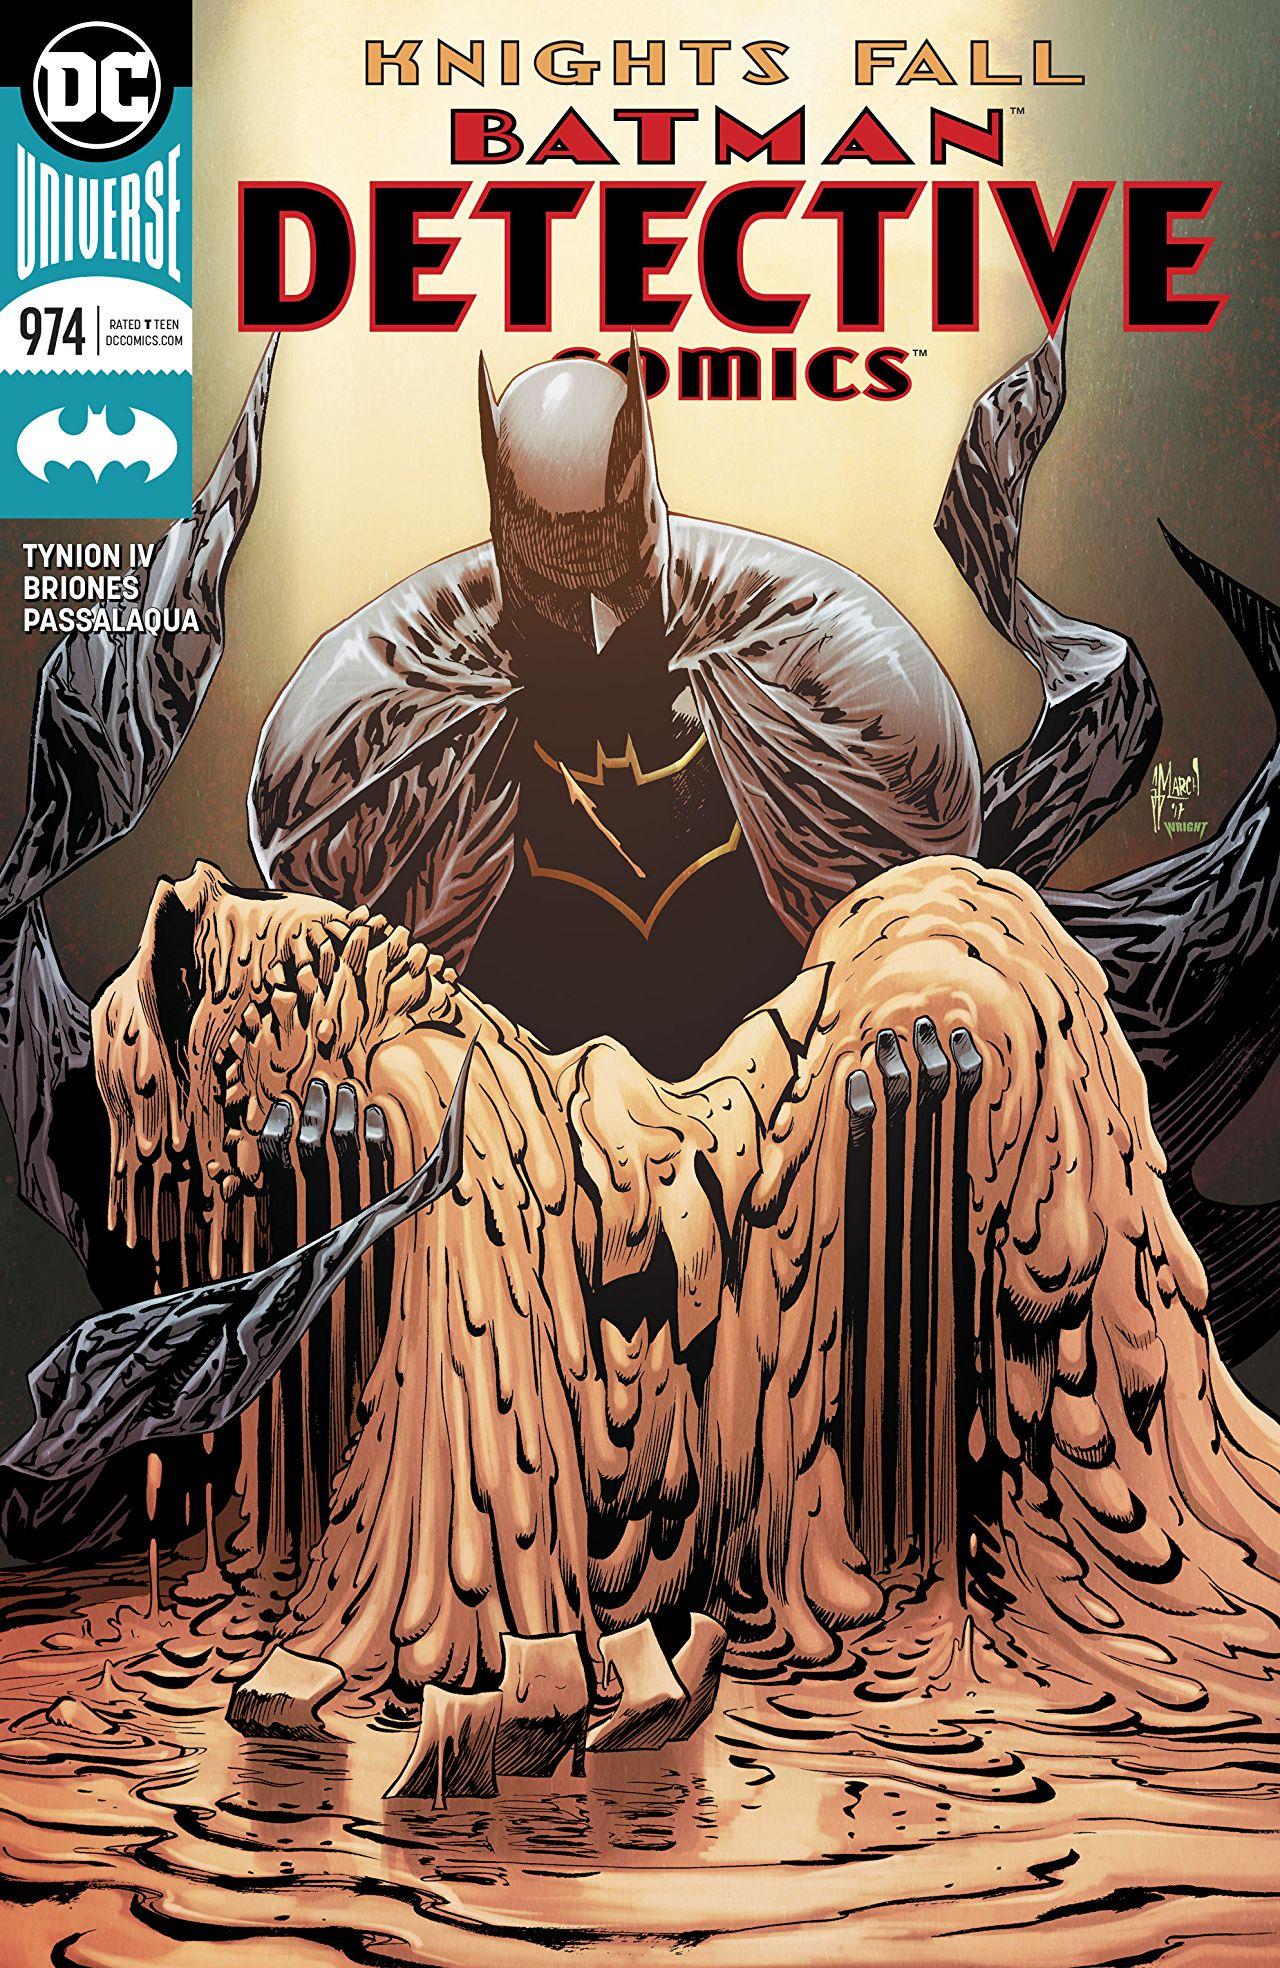 Detective Comics Vol. 1 #974